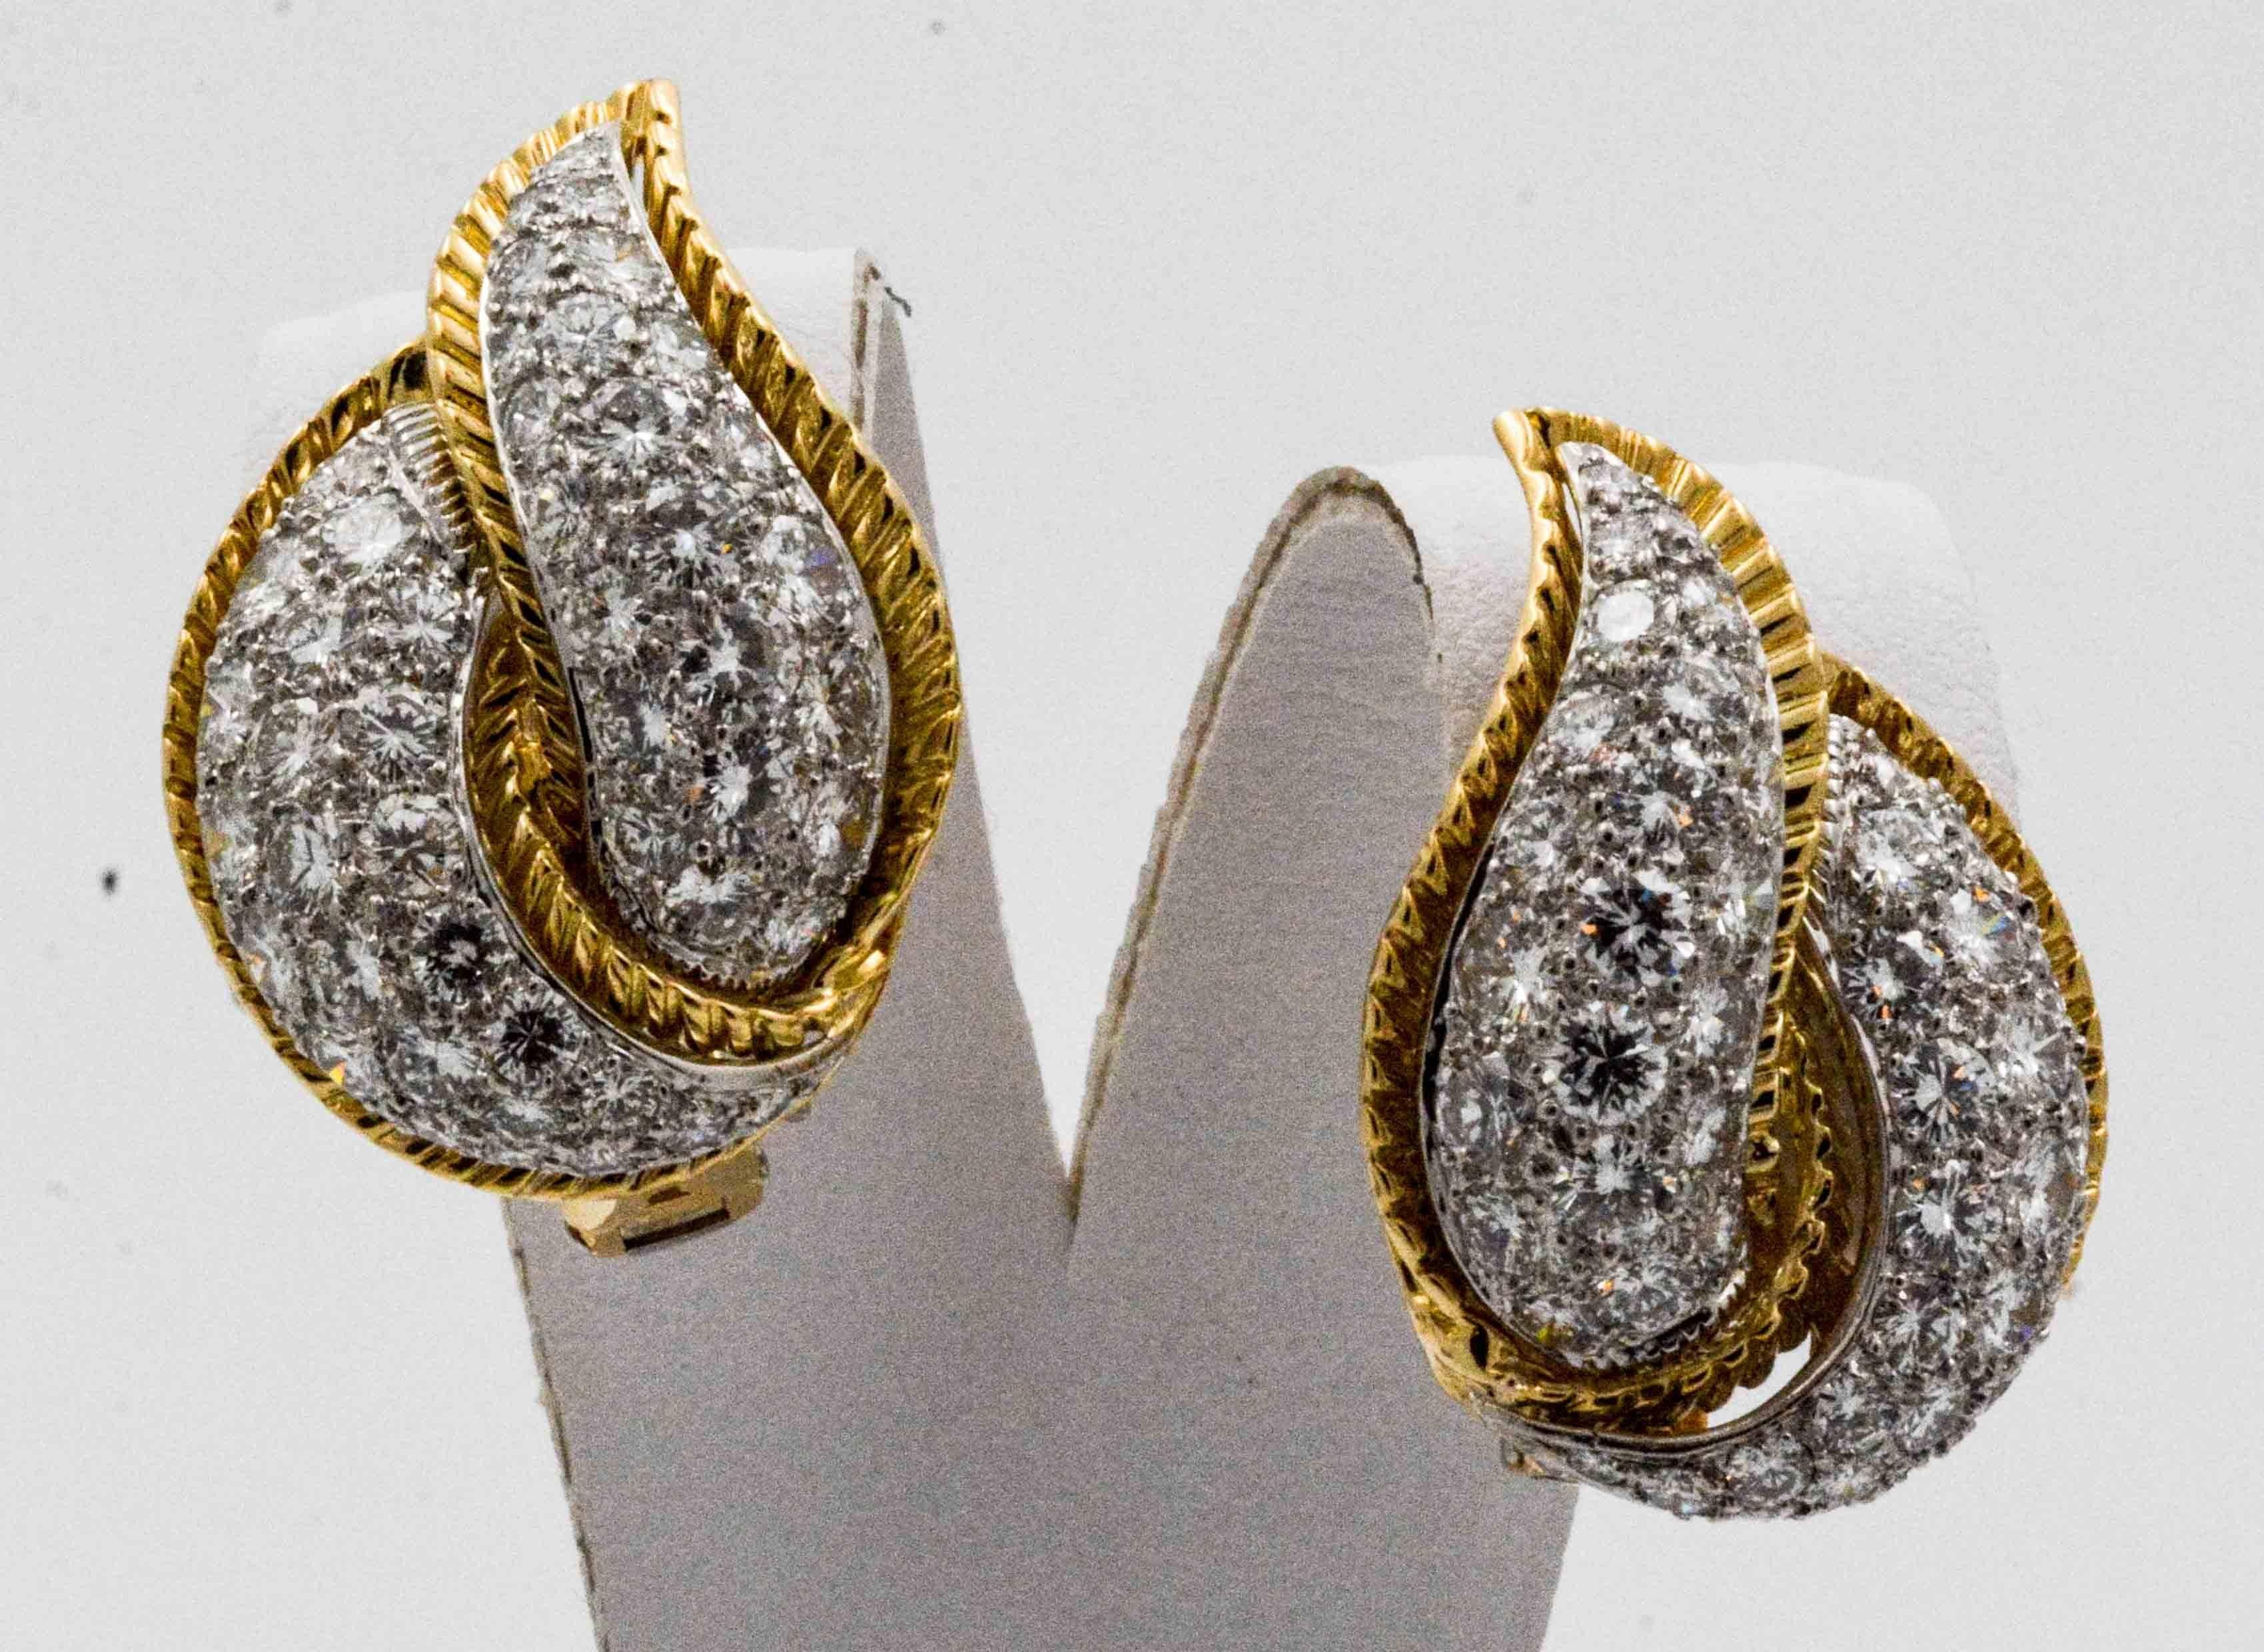 Modele Sterle 5.25 Carat Diamond 18 Karat Yellow Gold Leaf Earrings 1